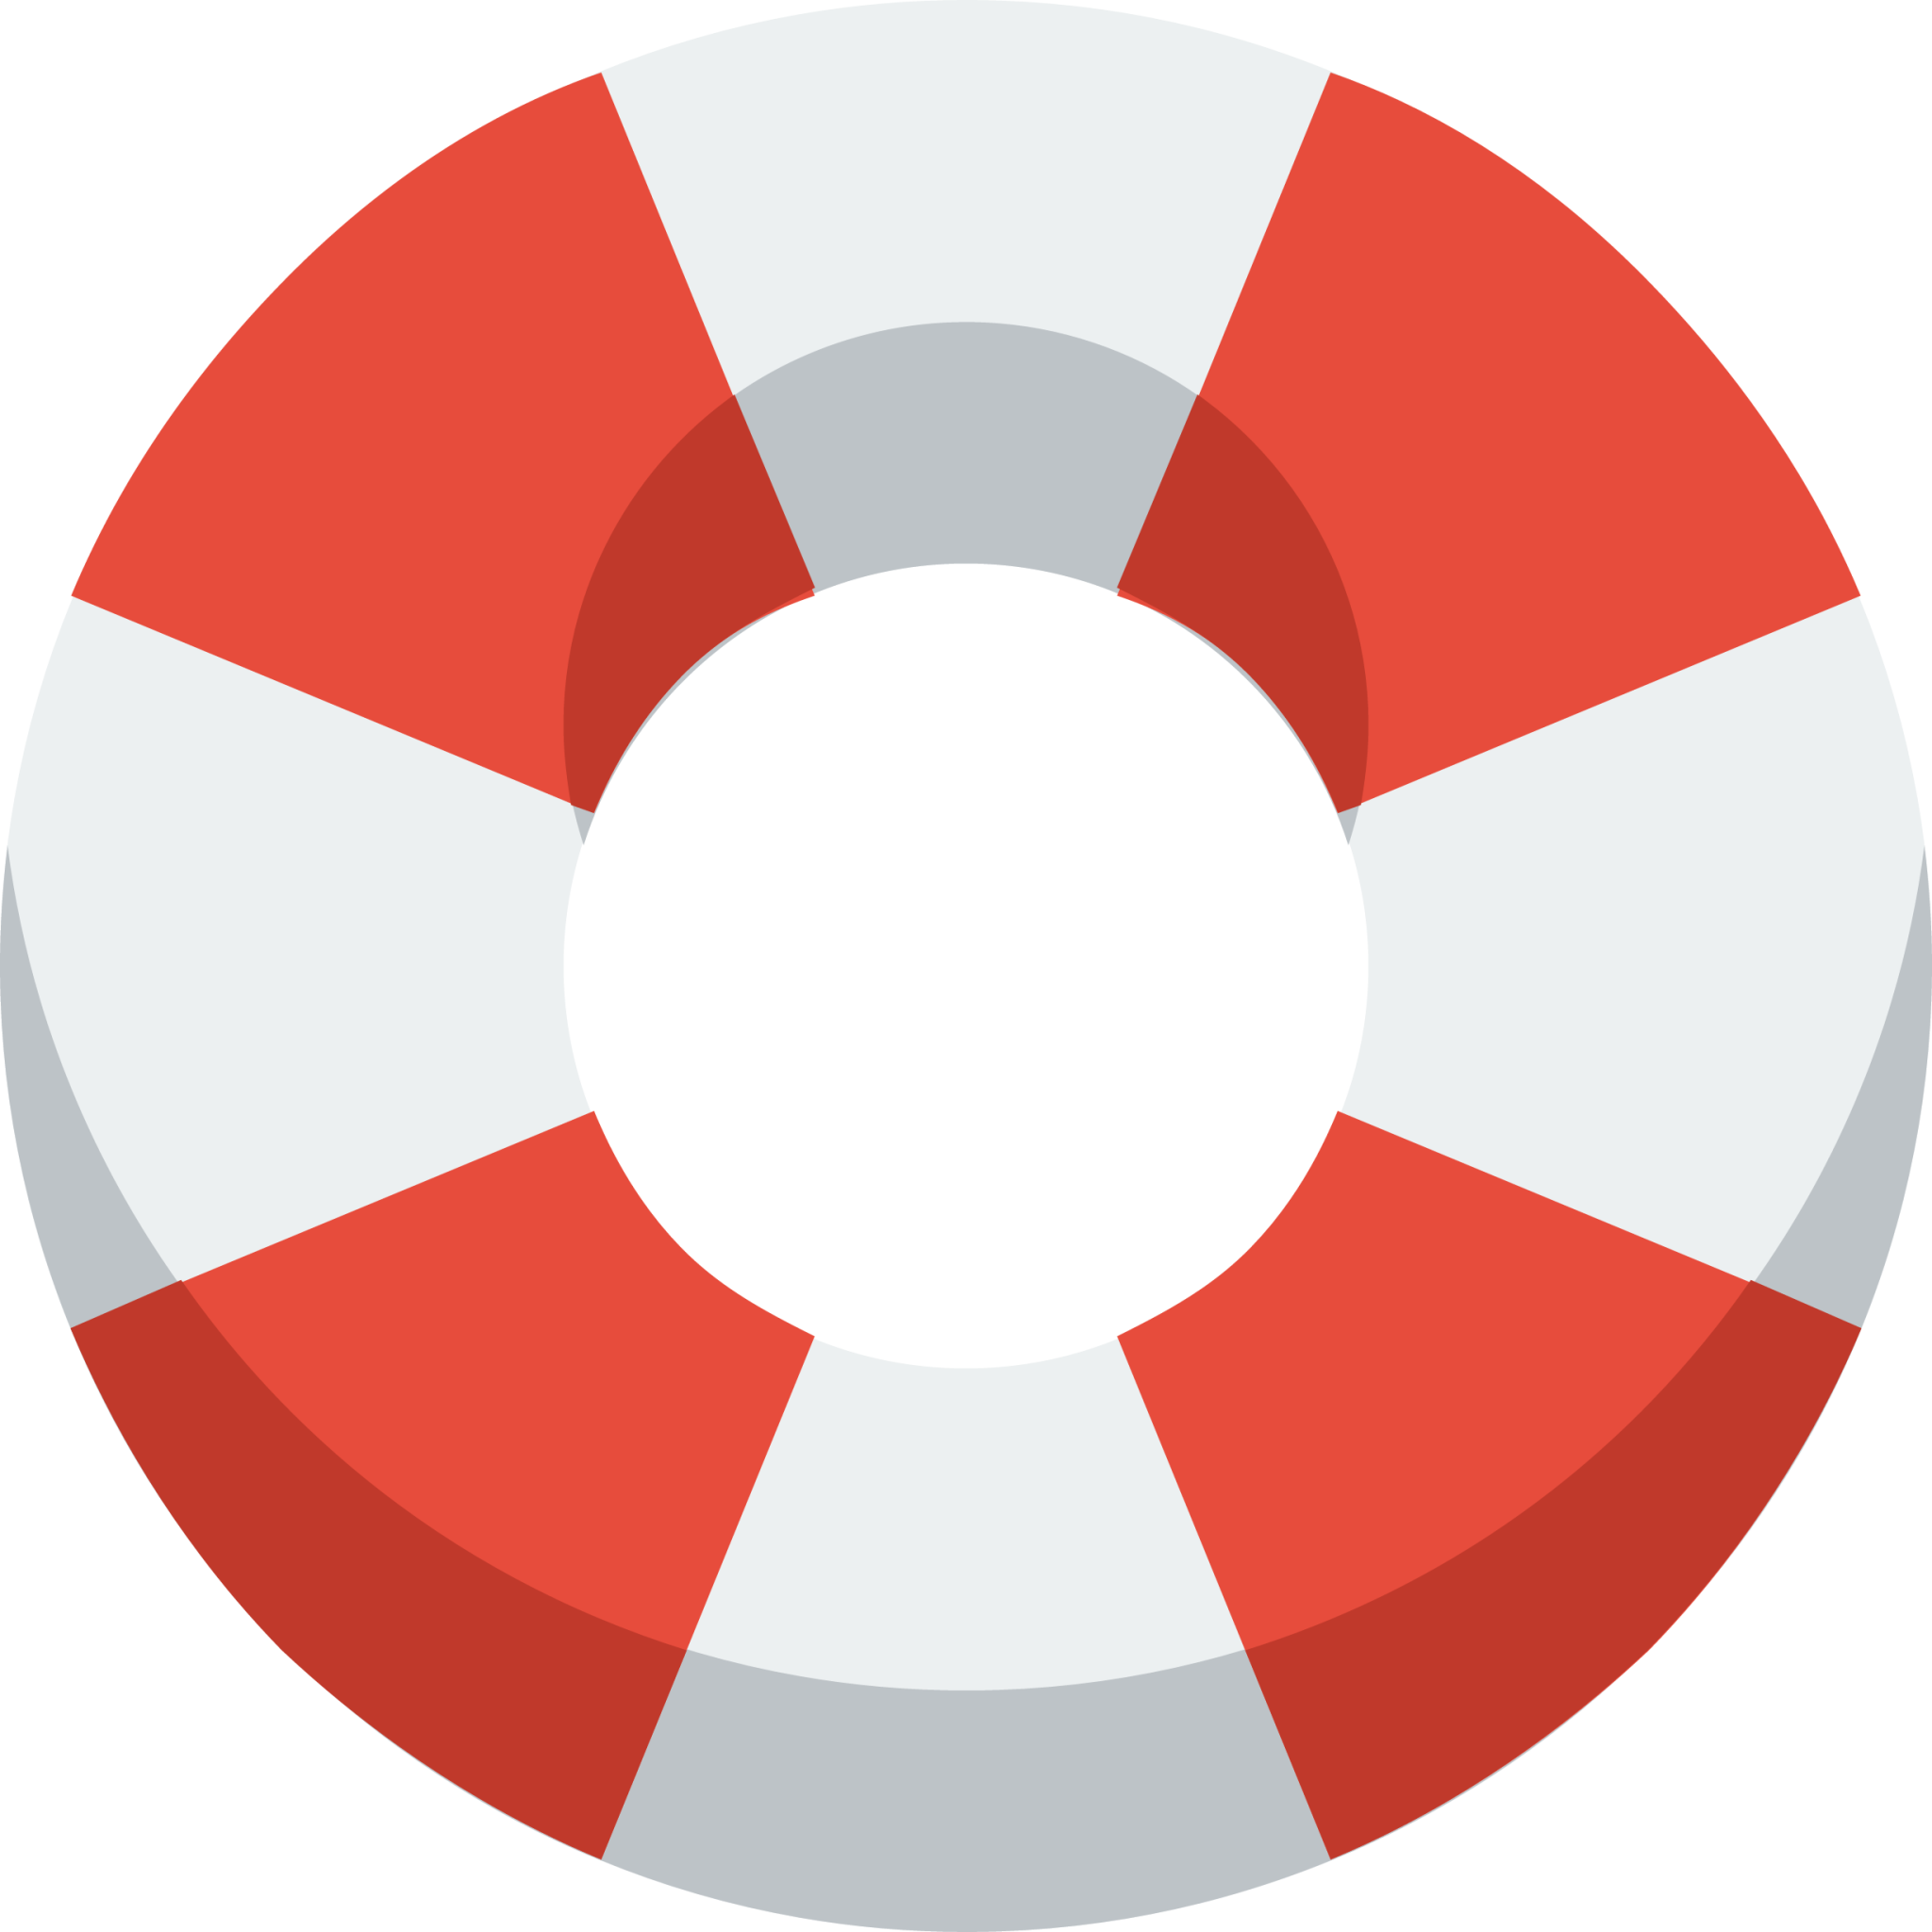 life buoy icon